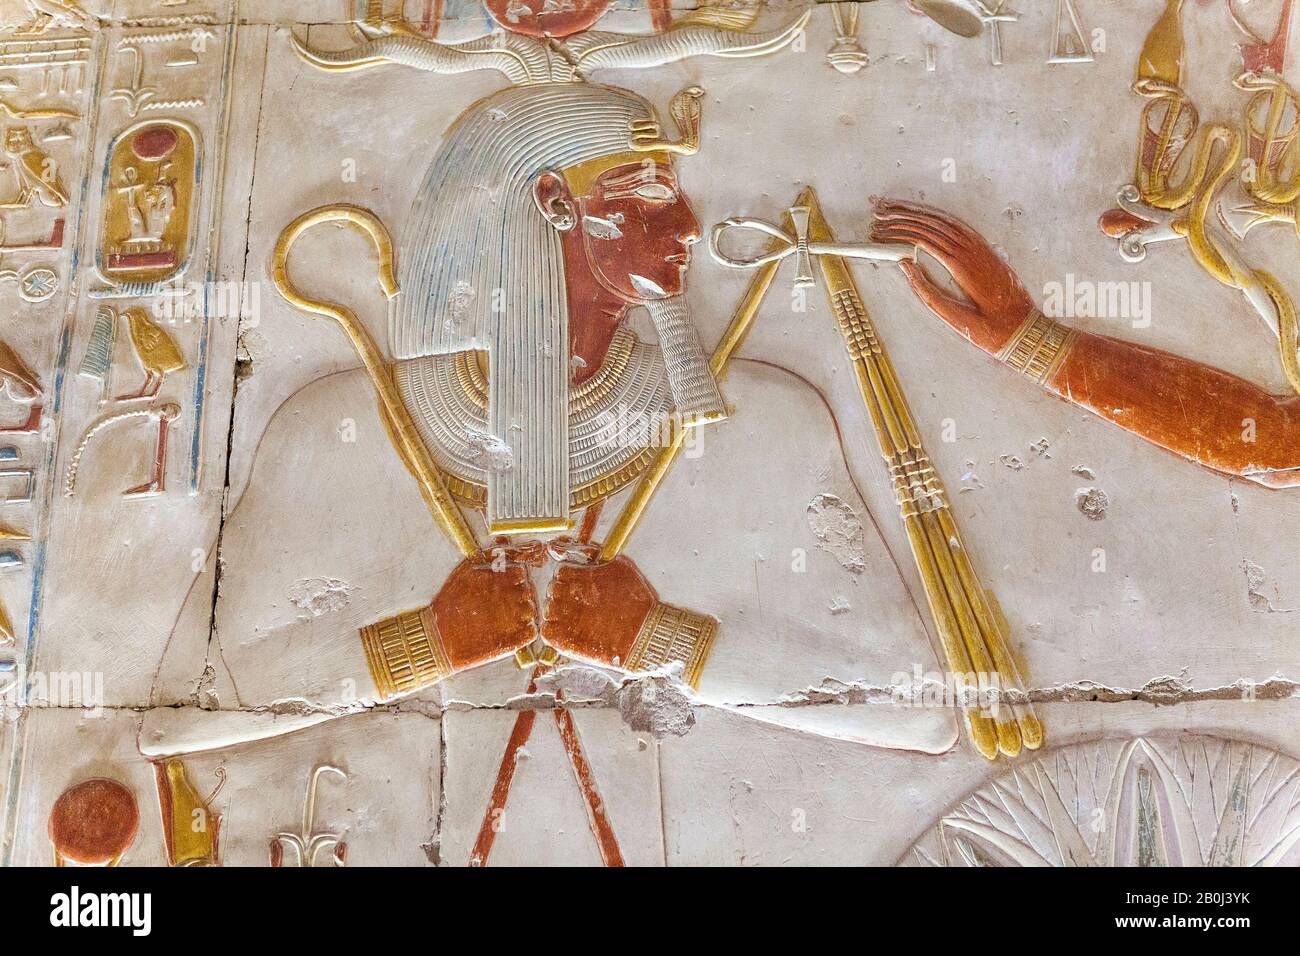 Re Seti i ricevette la caviglia da Thoth, il Grande Tempio di Abydos Foto Stock